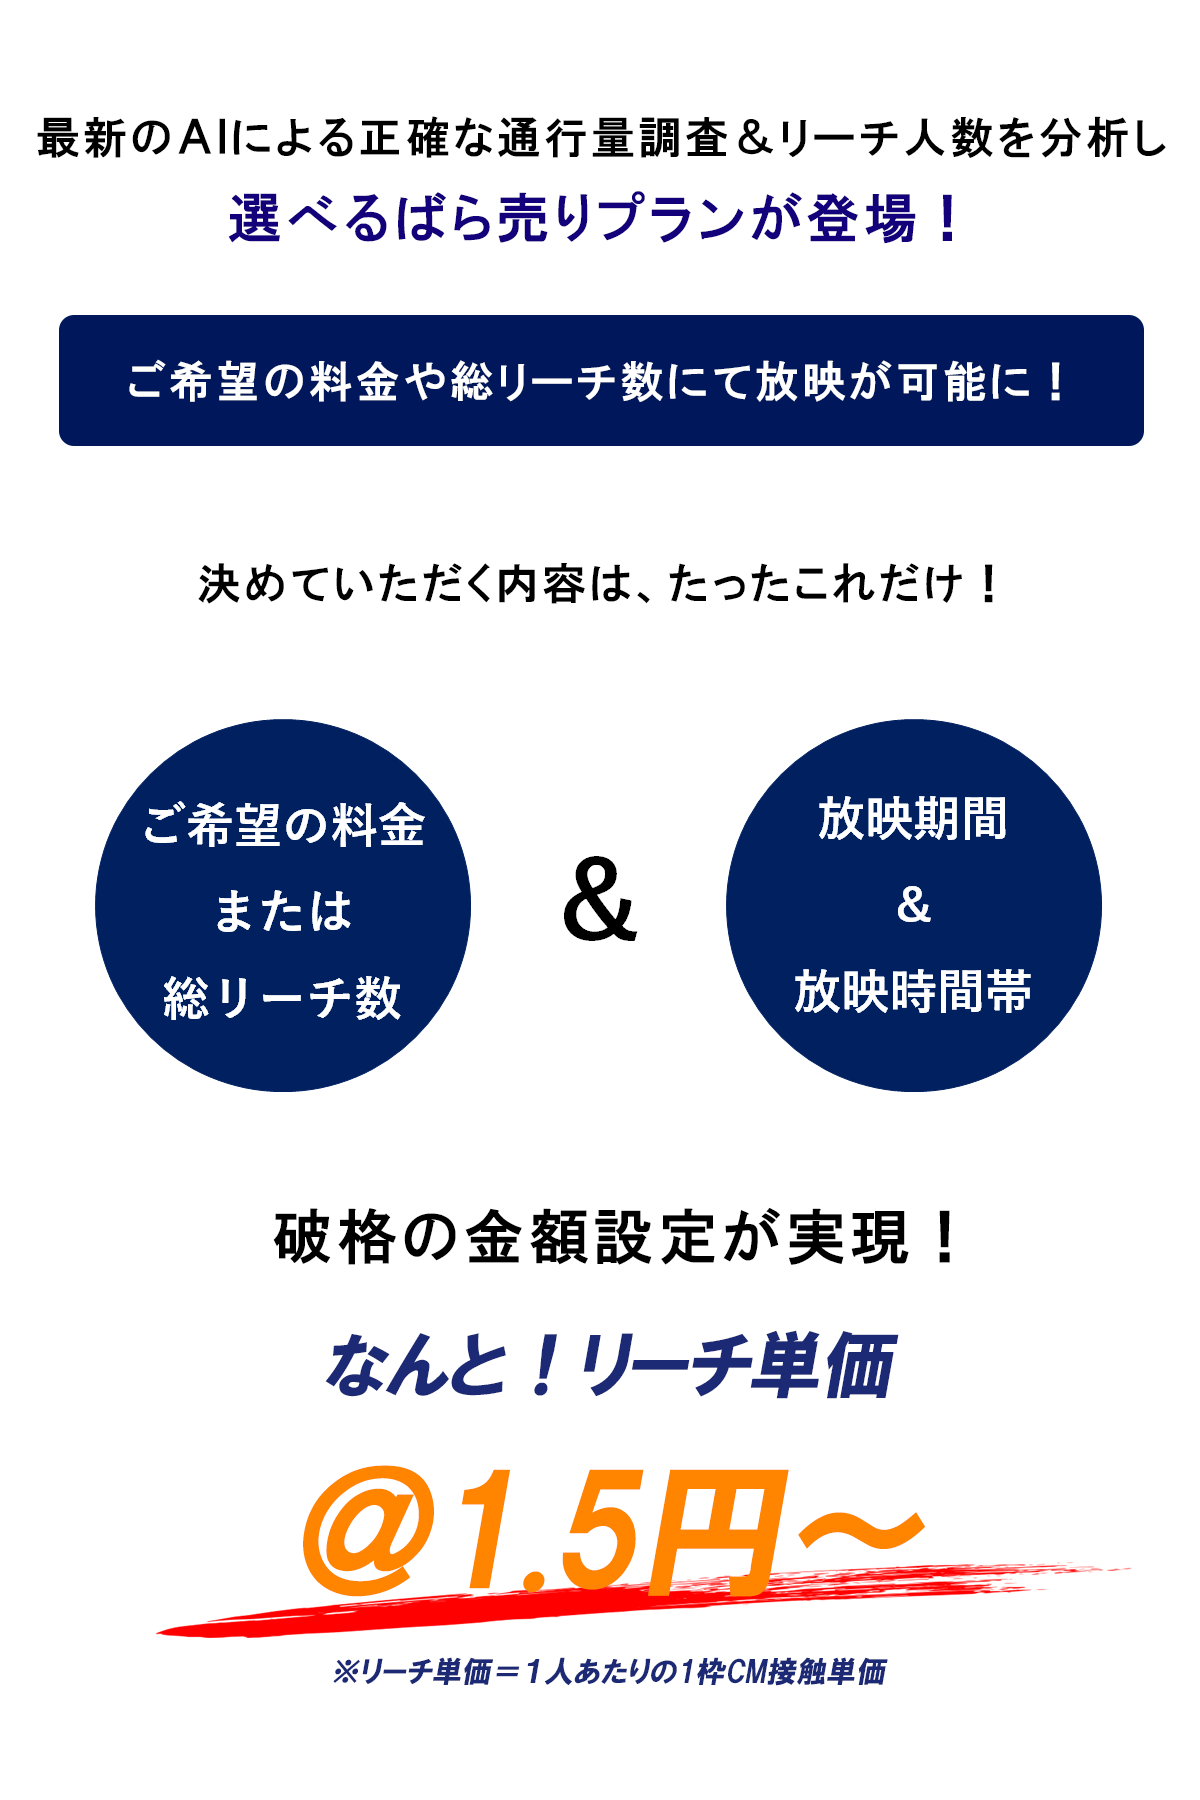 屋外広告_放映料金_名古屋栄_ICAビジョン